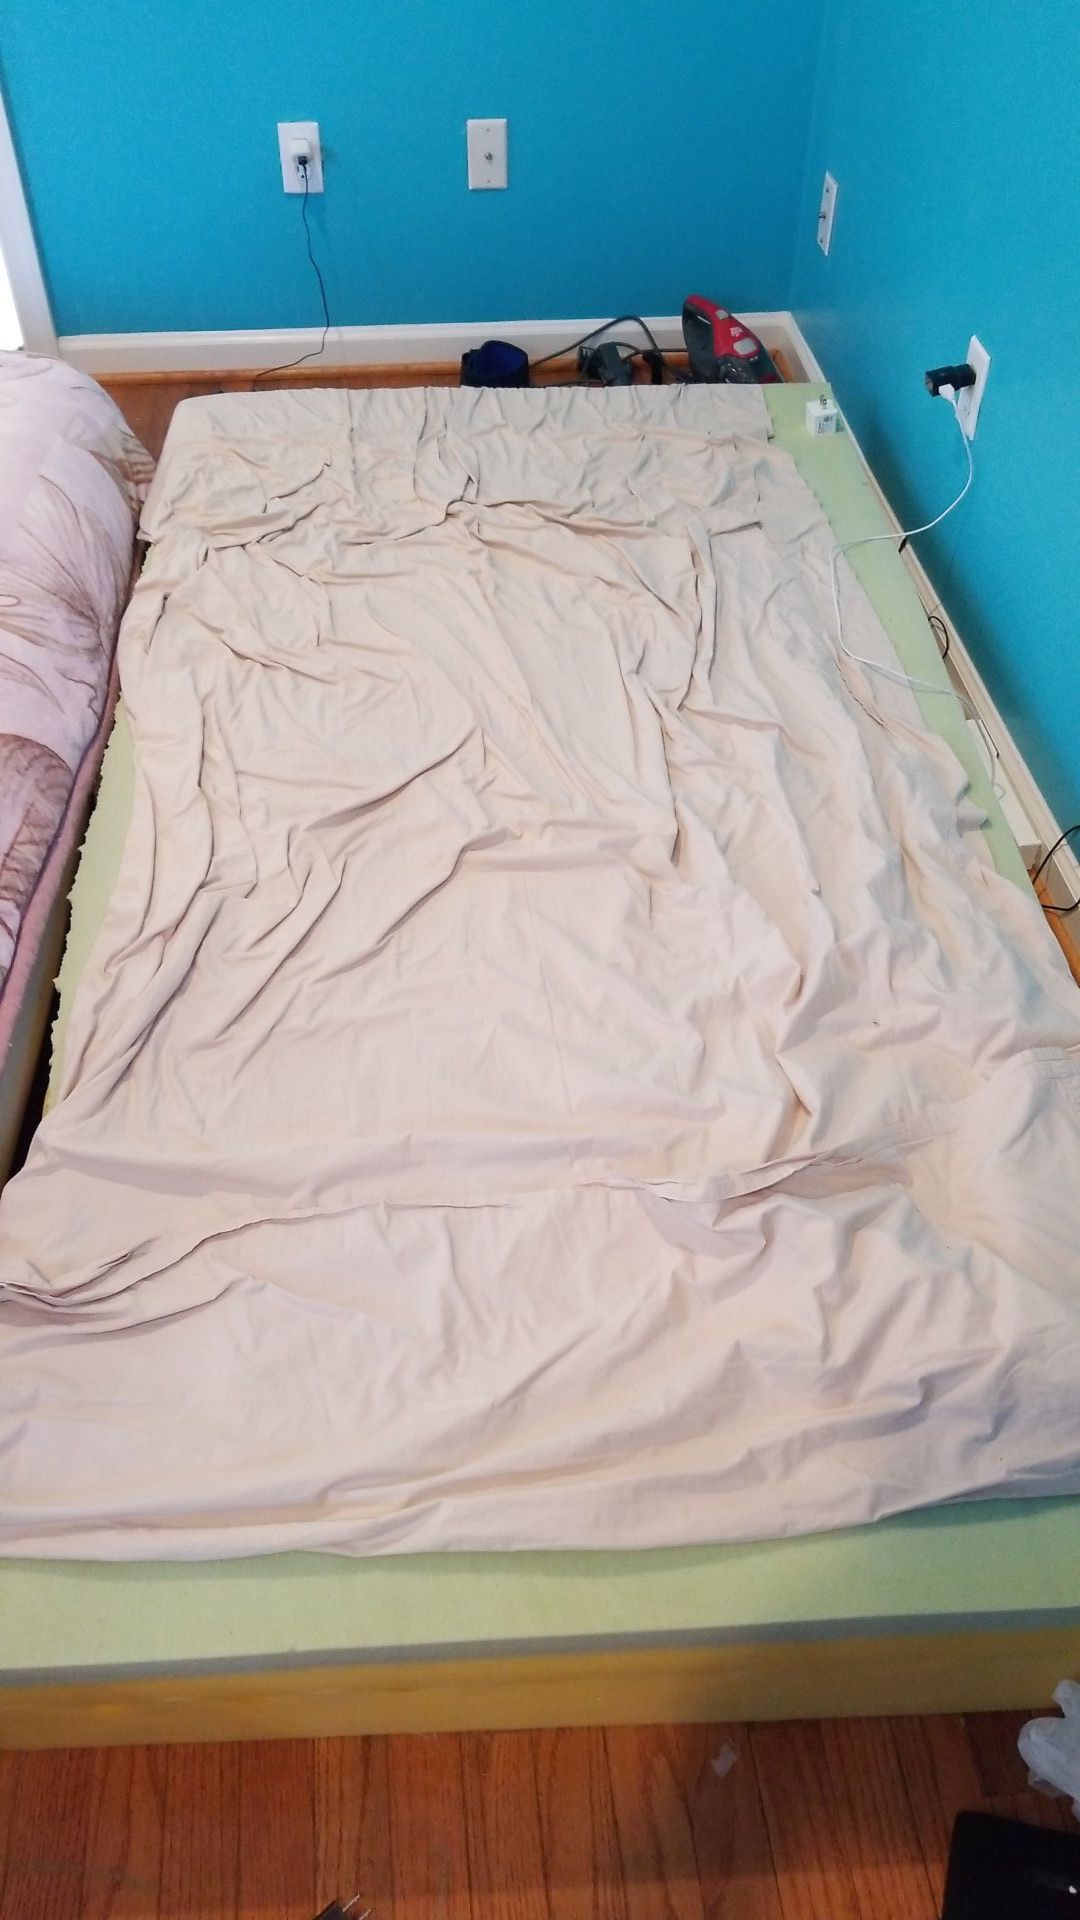 Twin mattress